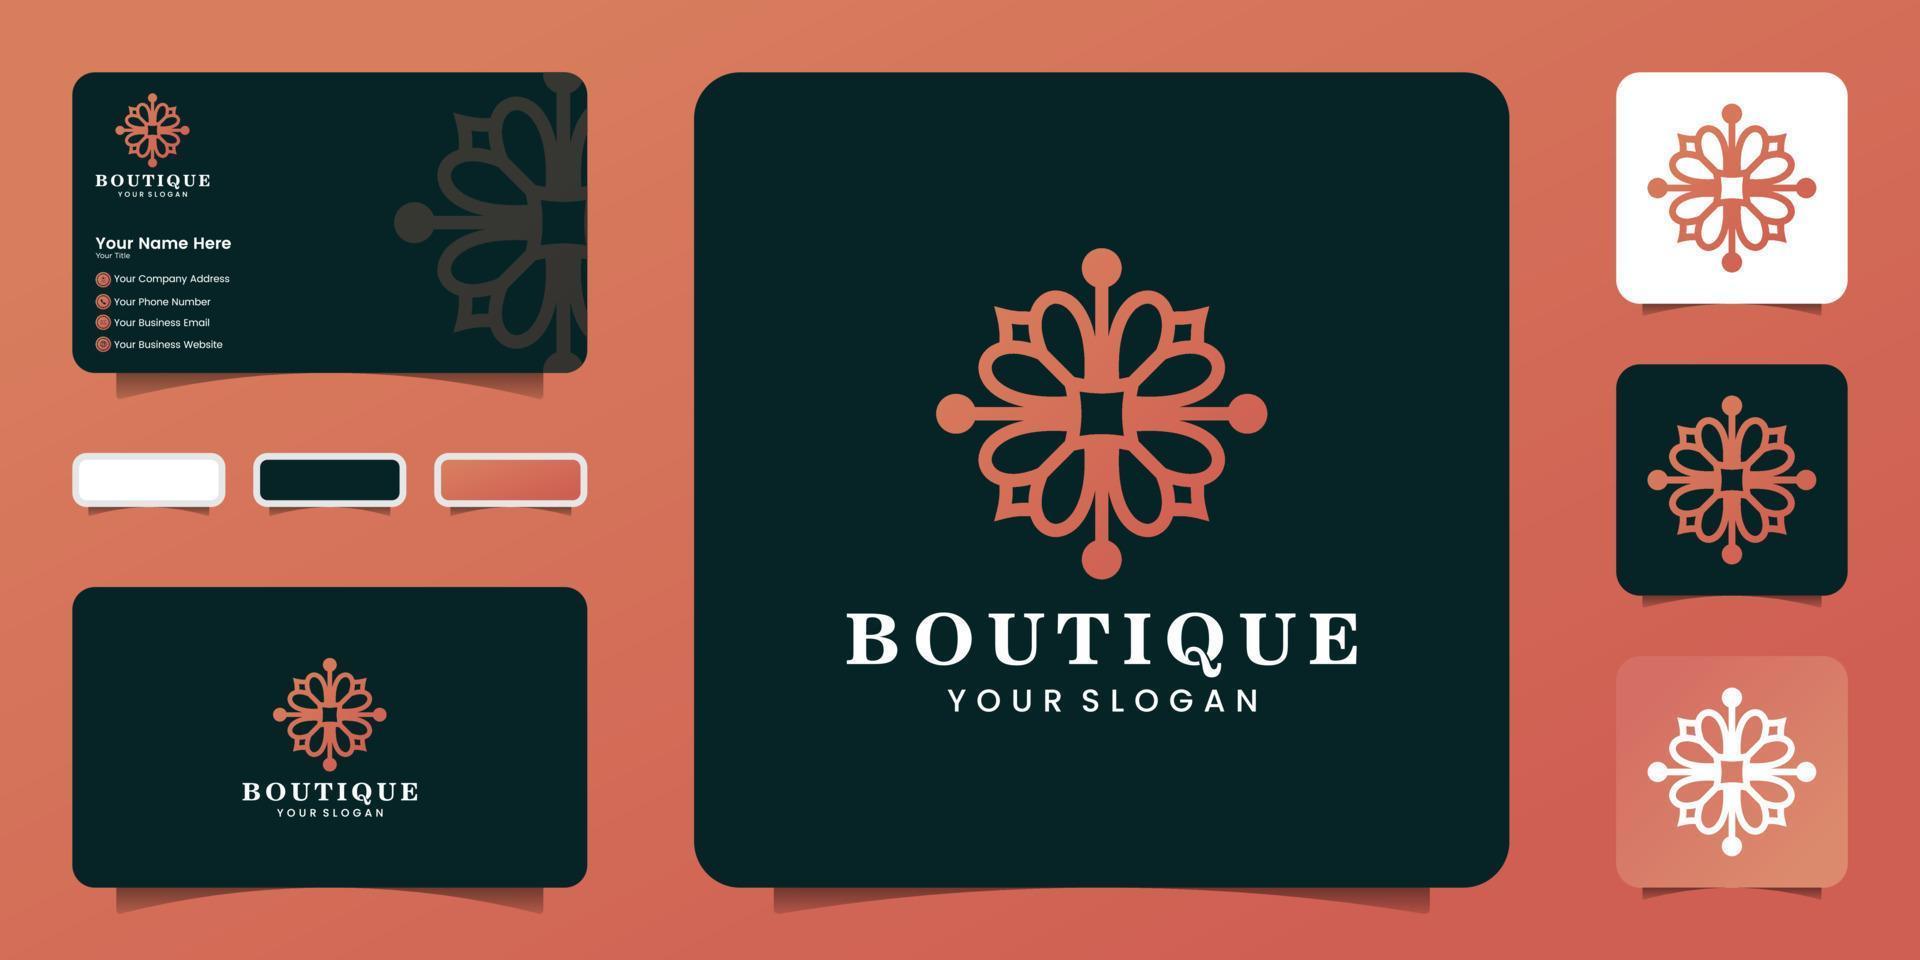 Beauty-Boutique-Logo in Blumenform für Frauen mit Line-Art-Stil und Visitenkarten-Inspiration vektor